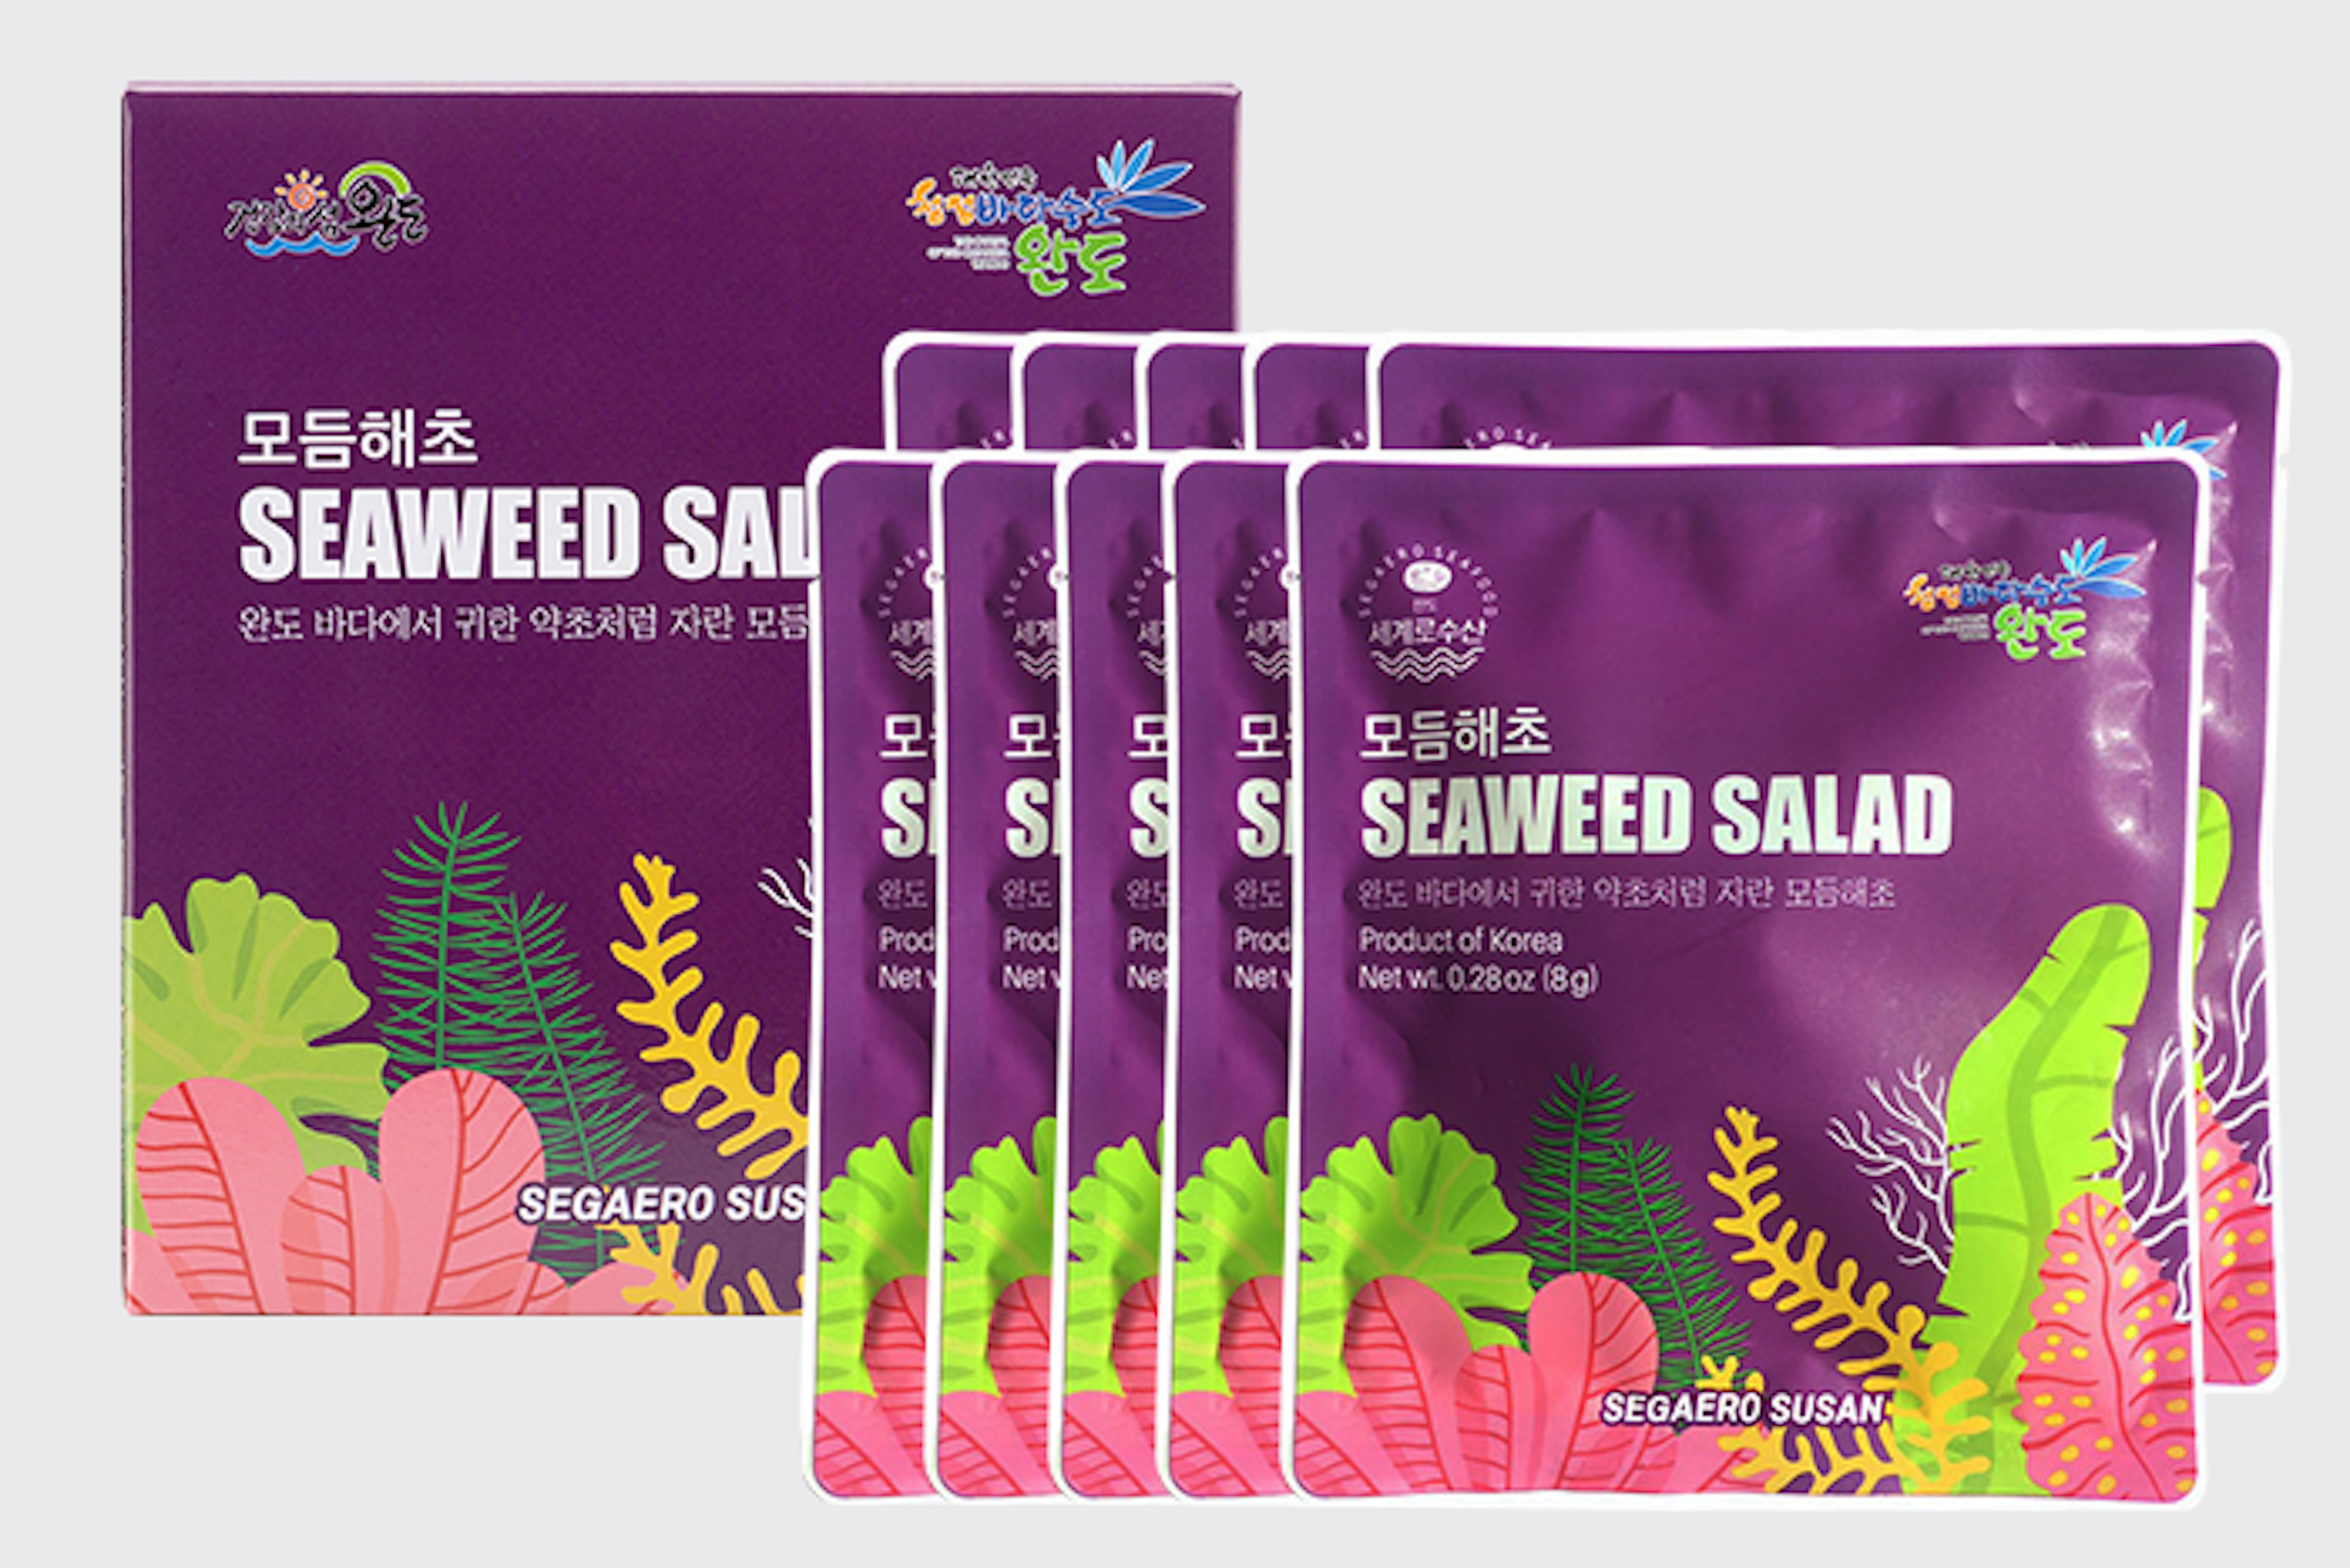 Segaero Susan Seaweed Mix Salad 10er Set 